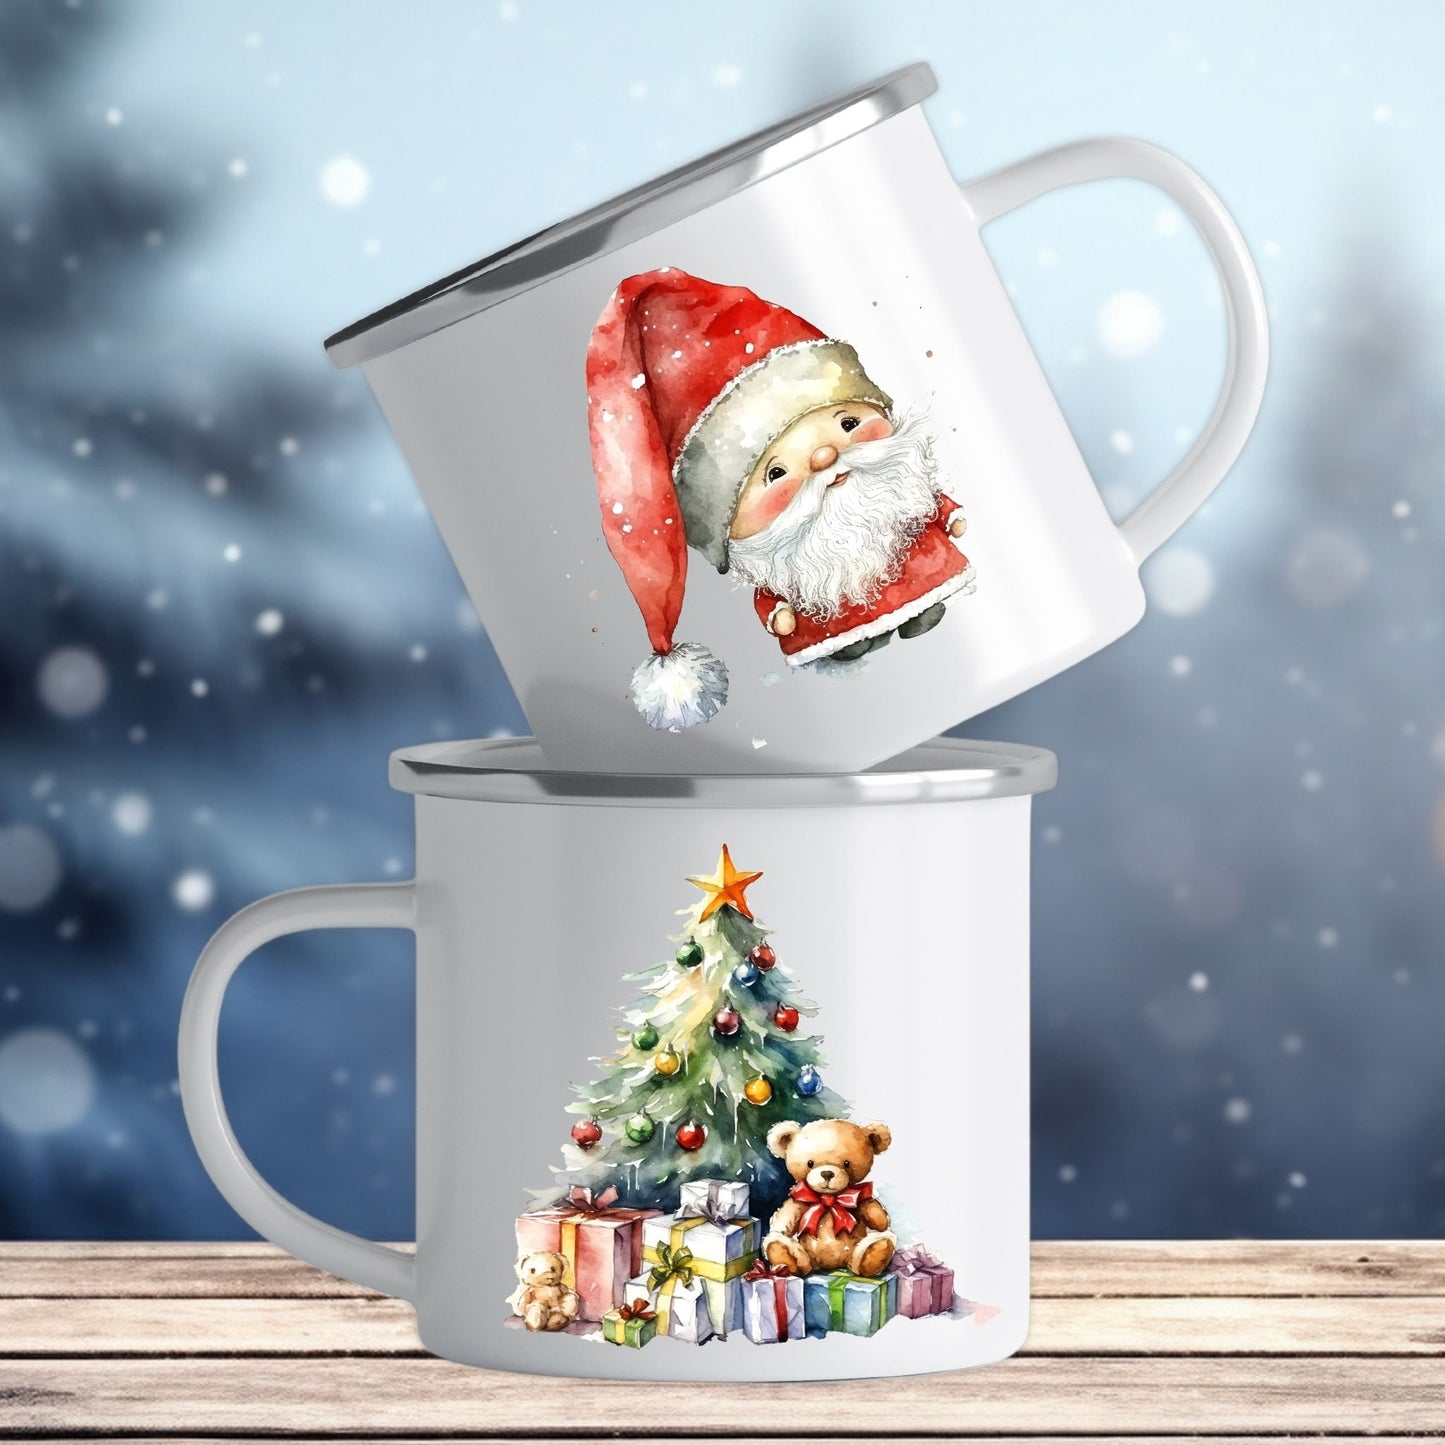 Emaljekrus i hvit farge med en dekorativ sølvkant øverst. Kruset er påført to dekorative julemotiver, en på hver side av koppen. Dette er en lett, uknuselig kopp på 138 gram. Bildet viser begge sider av kruset.